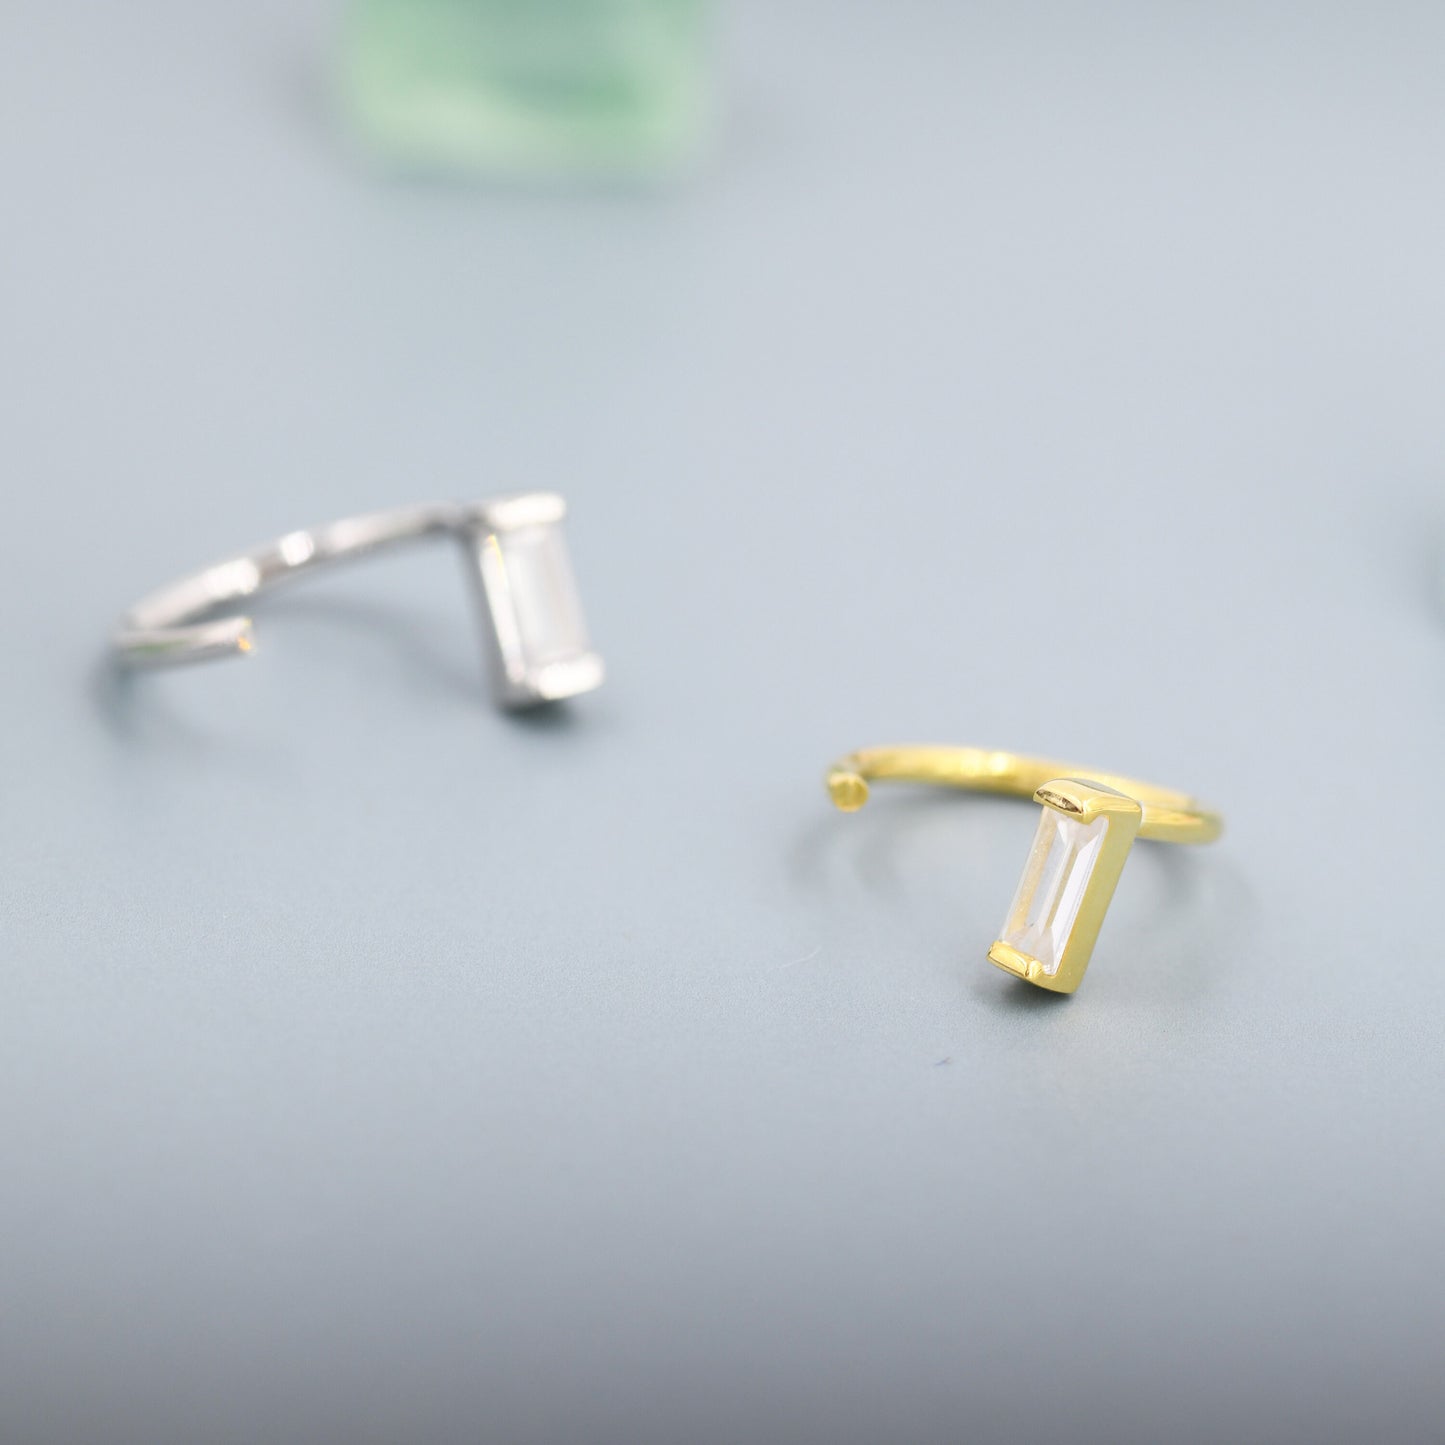 Baguette Cut CZ Huggie Hoop Earrings in Sterling Silver, Silver or Gold, Open Hoops,  Pull-Through Threader Earrings